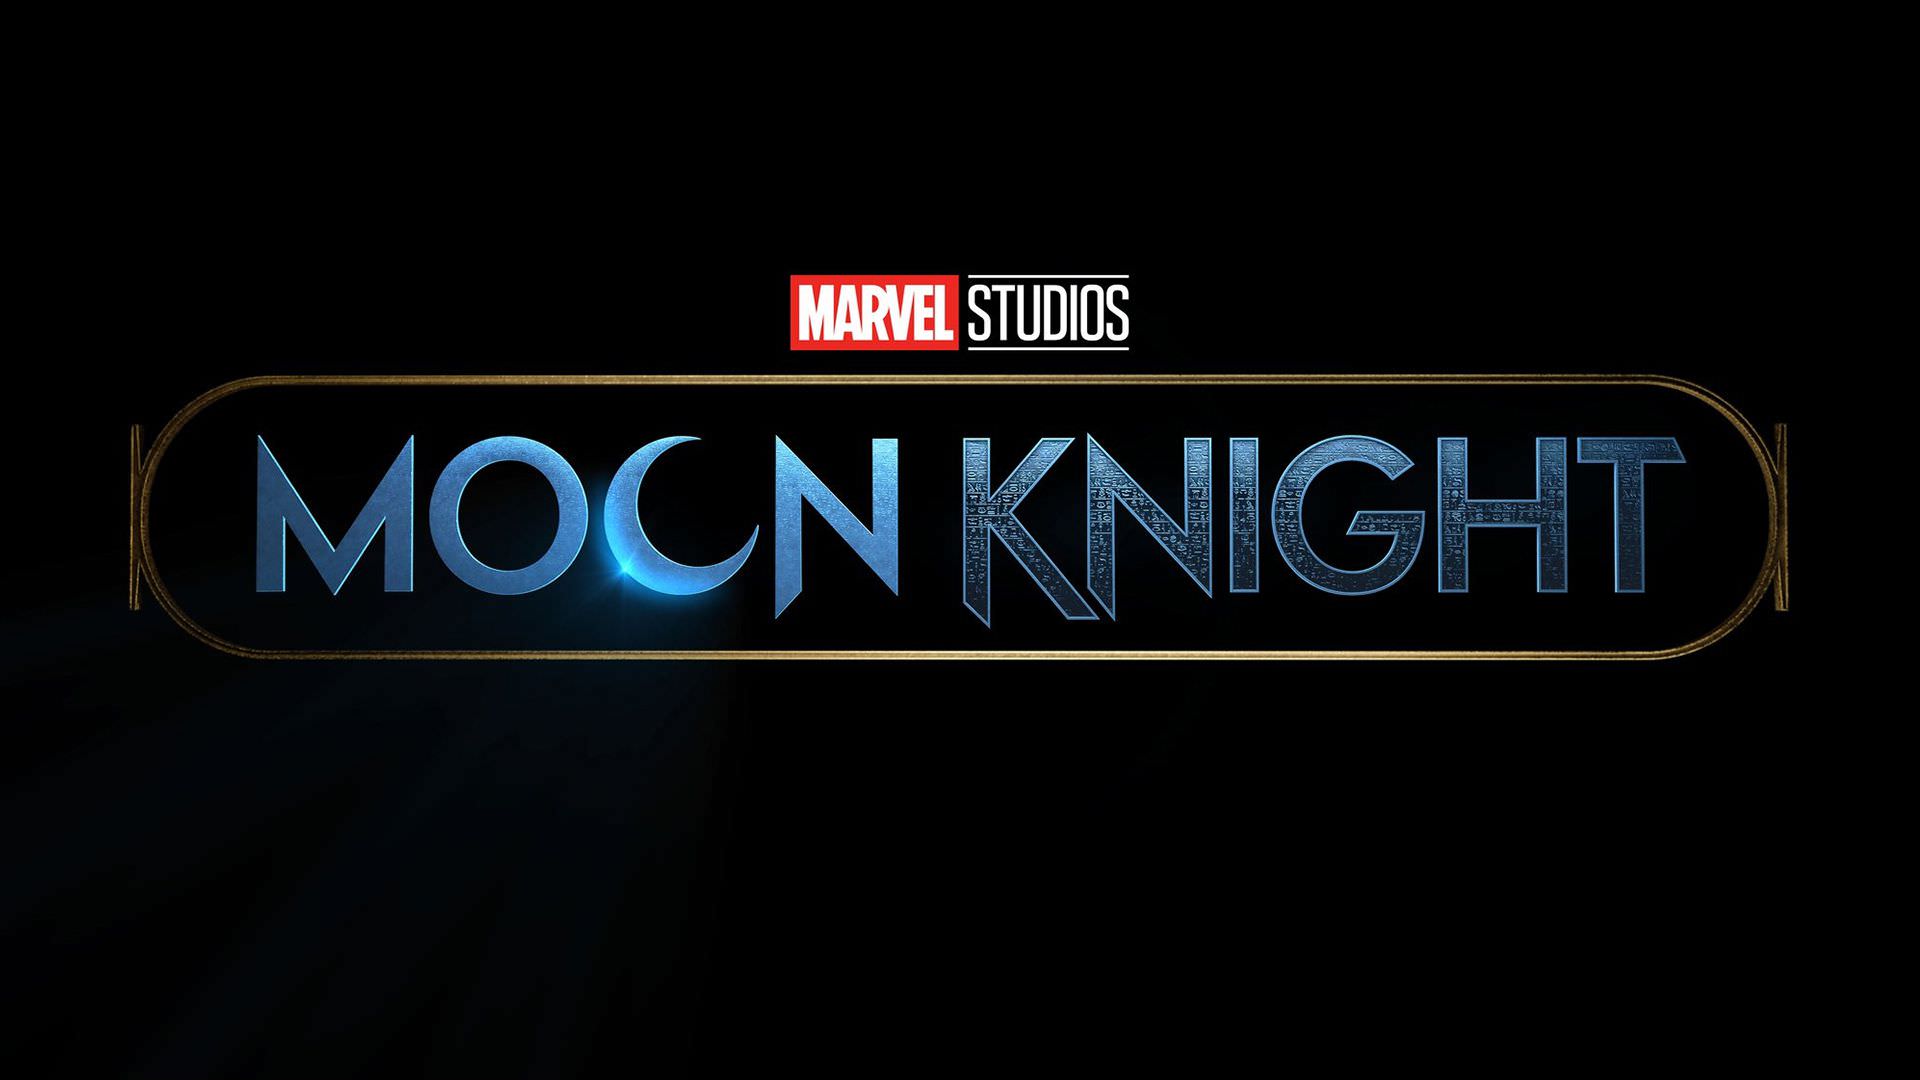 دو کارگردان دیگر به سریال Moon Knight اضافه شدند؛ مشخص شدن زمان و مکان شروع فیلمبرداری